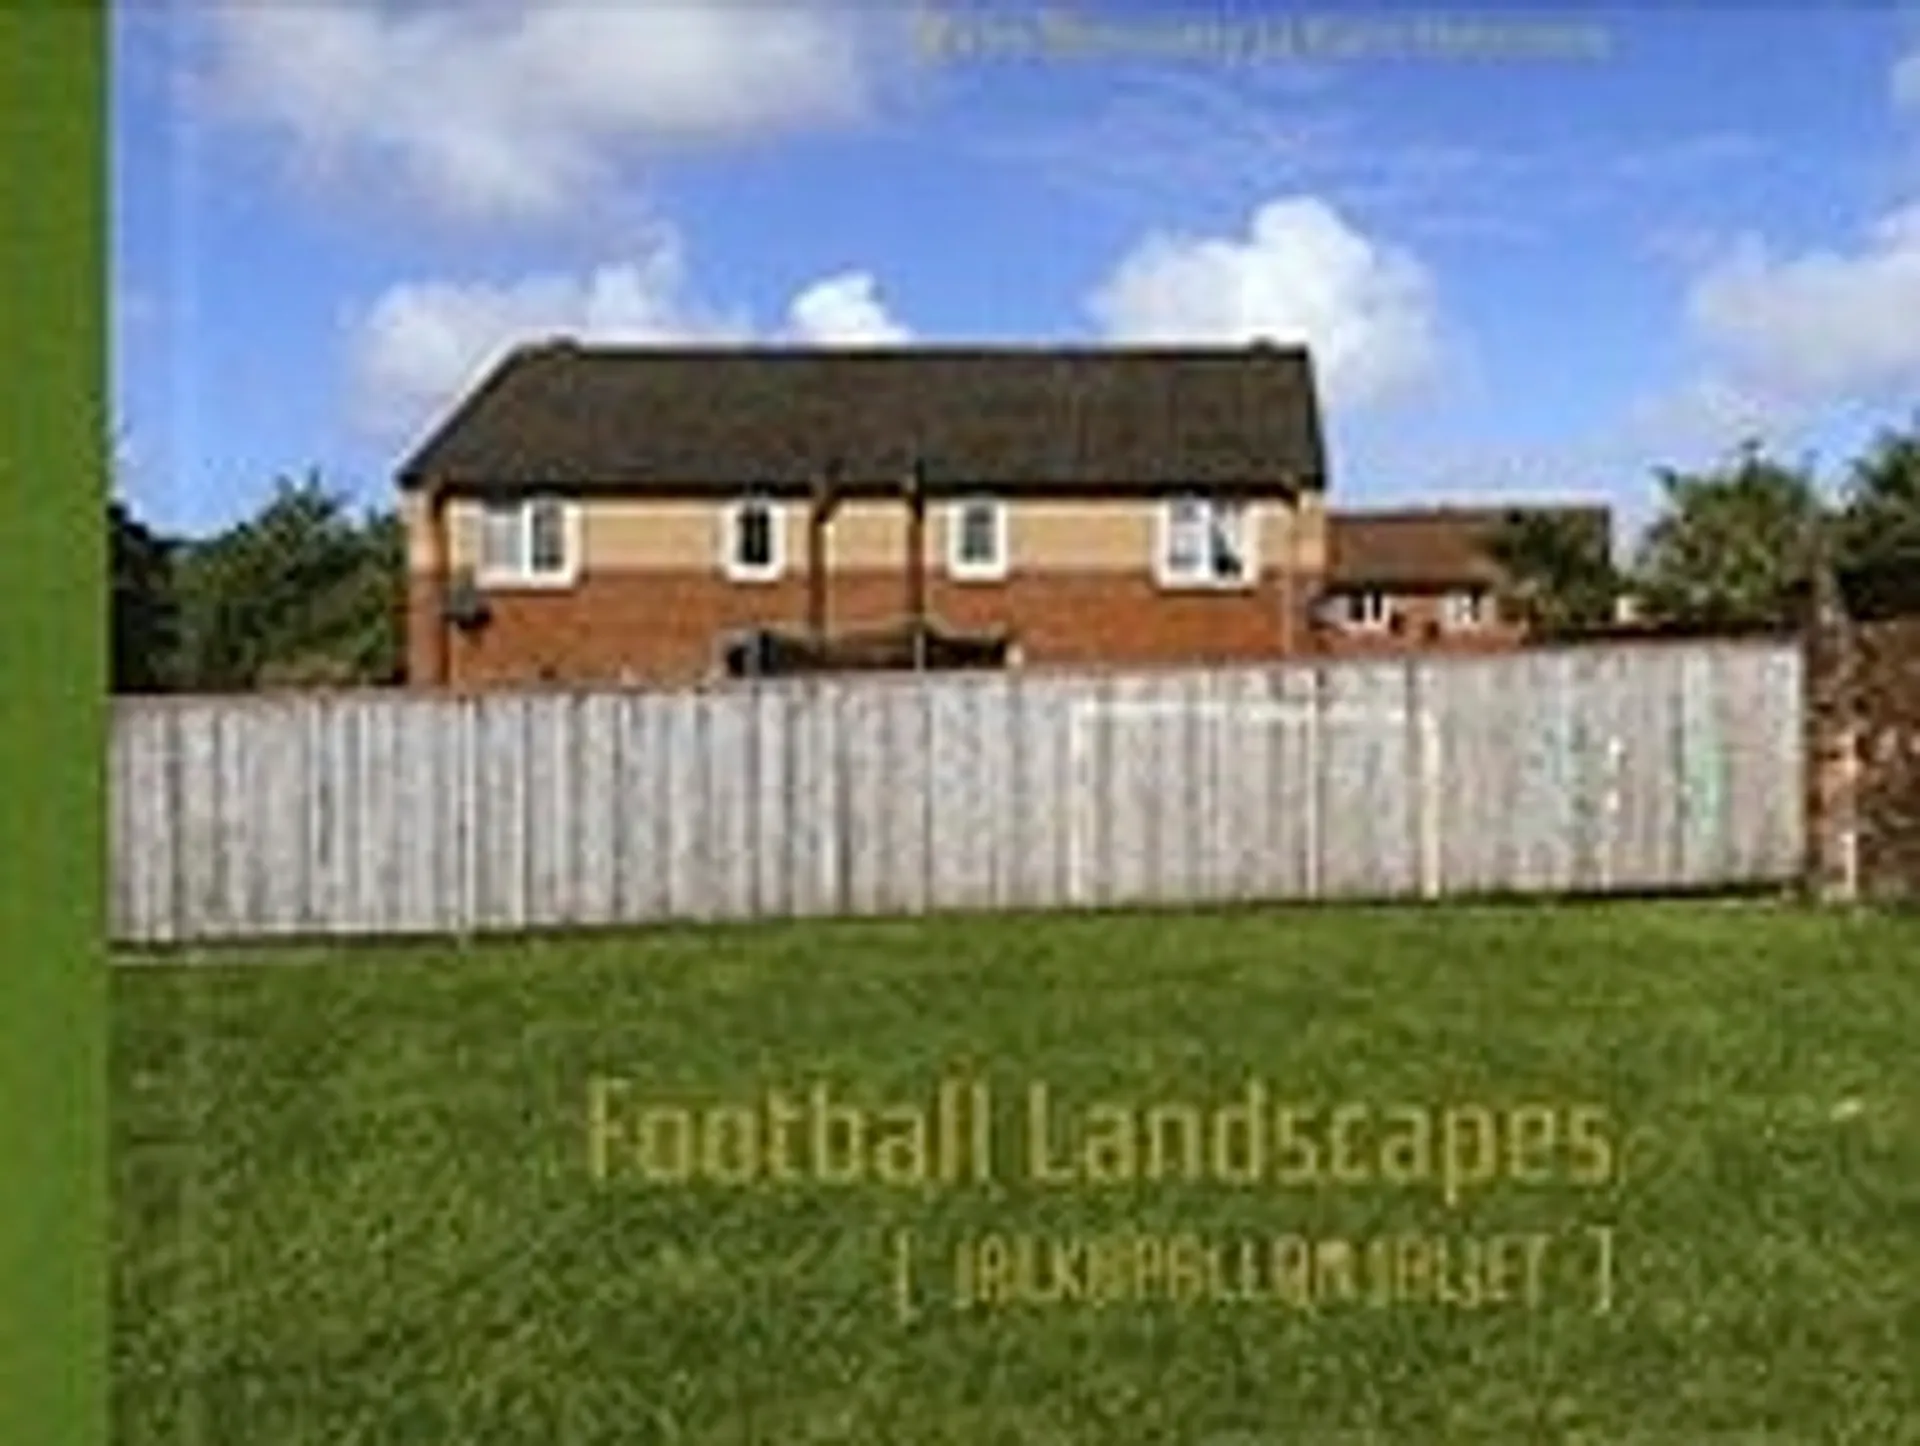 Auerniitty, Football landscapes = Jalkapallon jäljet